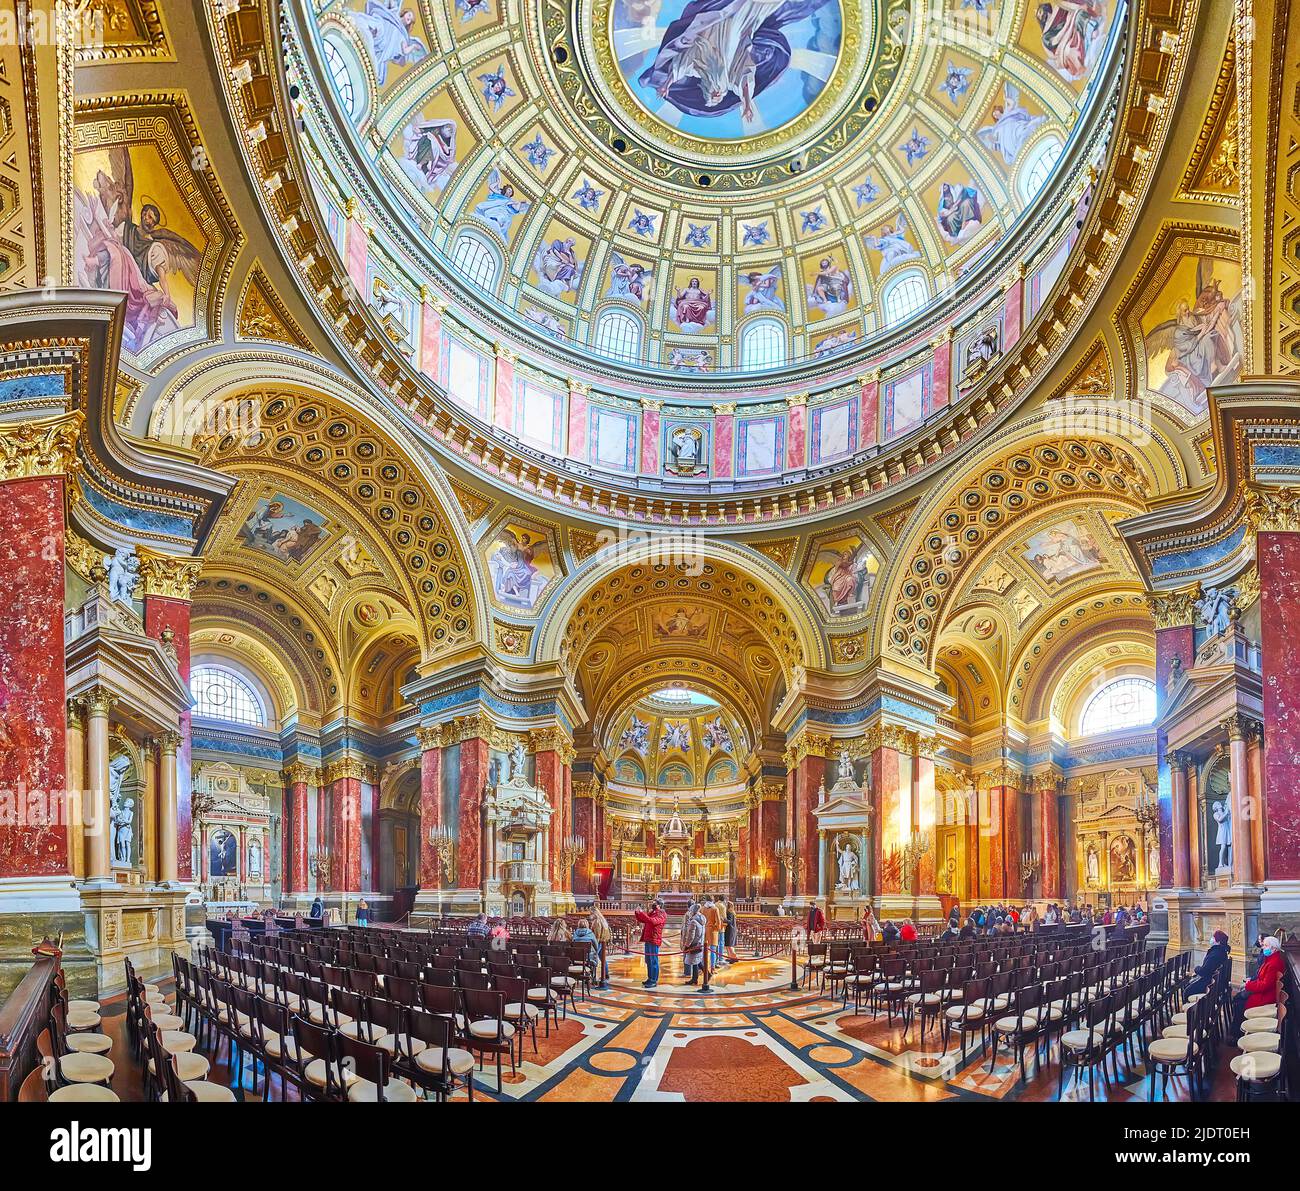 BUDAPEST, UNGARN - 27. FEBRUAR 2022: Der große neoklassizistische Gebetsraum der St.-Stephans-Kathedrale mit kunstvoller Kuppel, geschnitzten und bemalten Bögen, am 27. Februar i Stockfoto